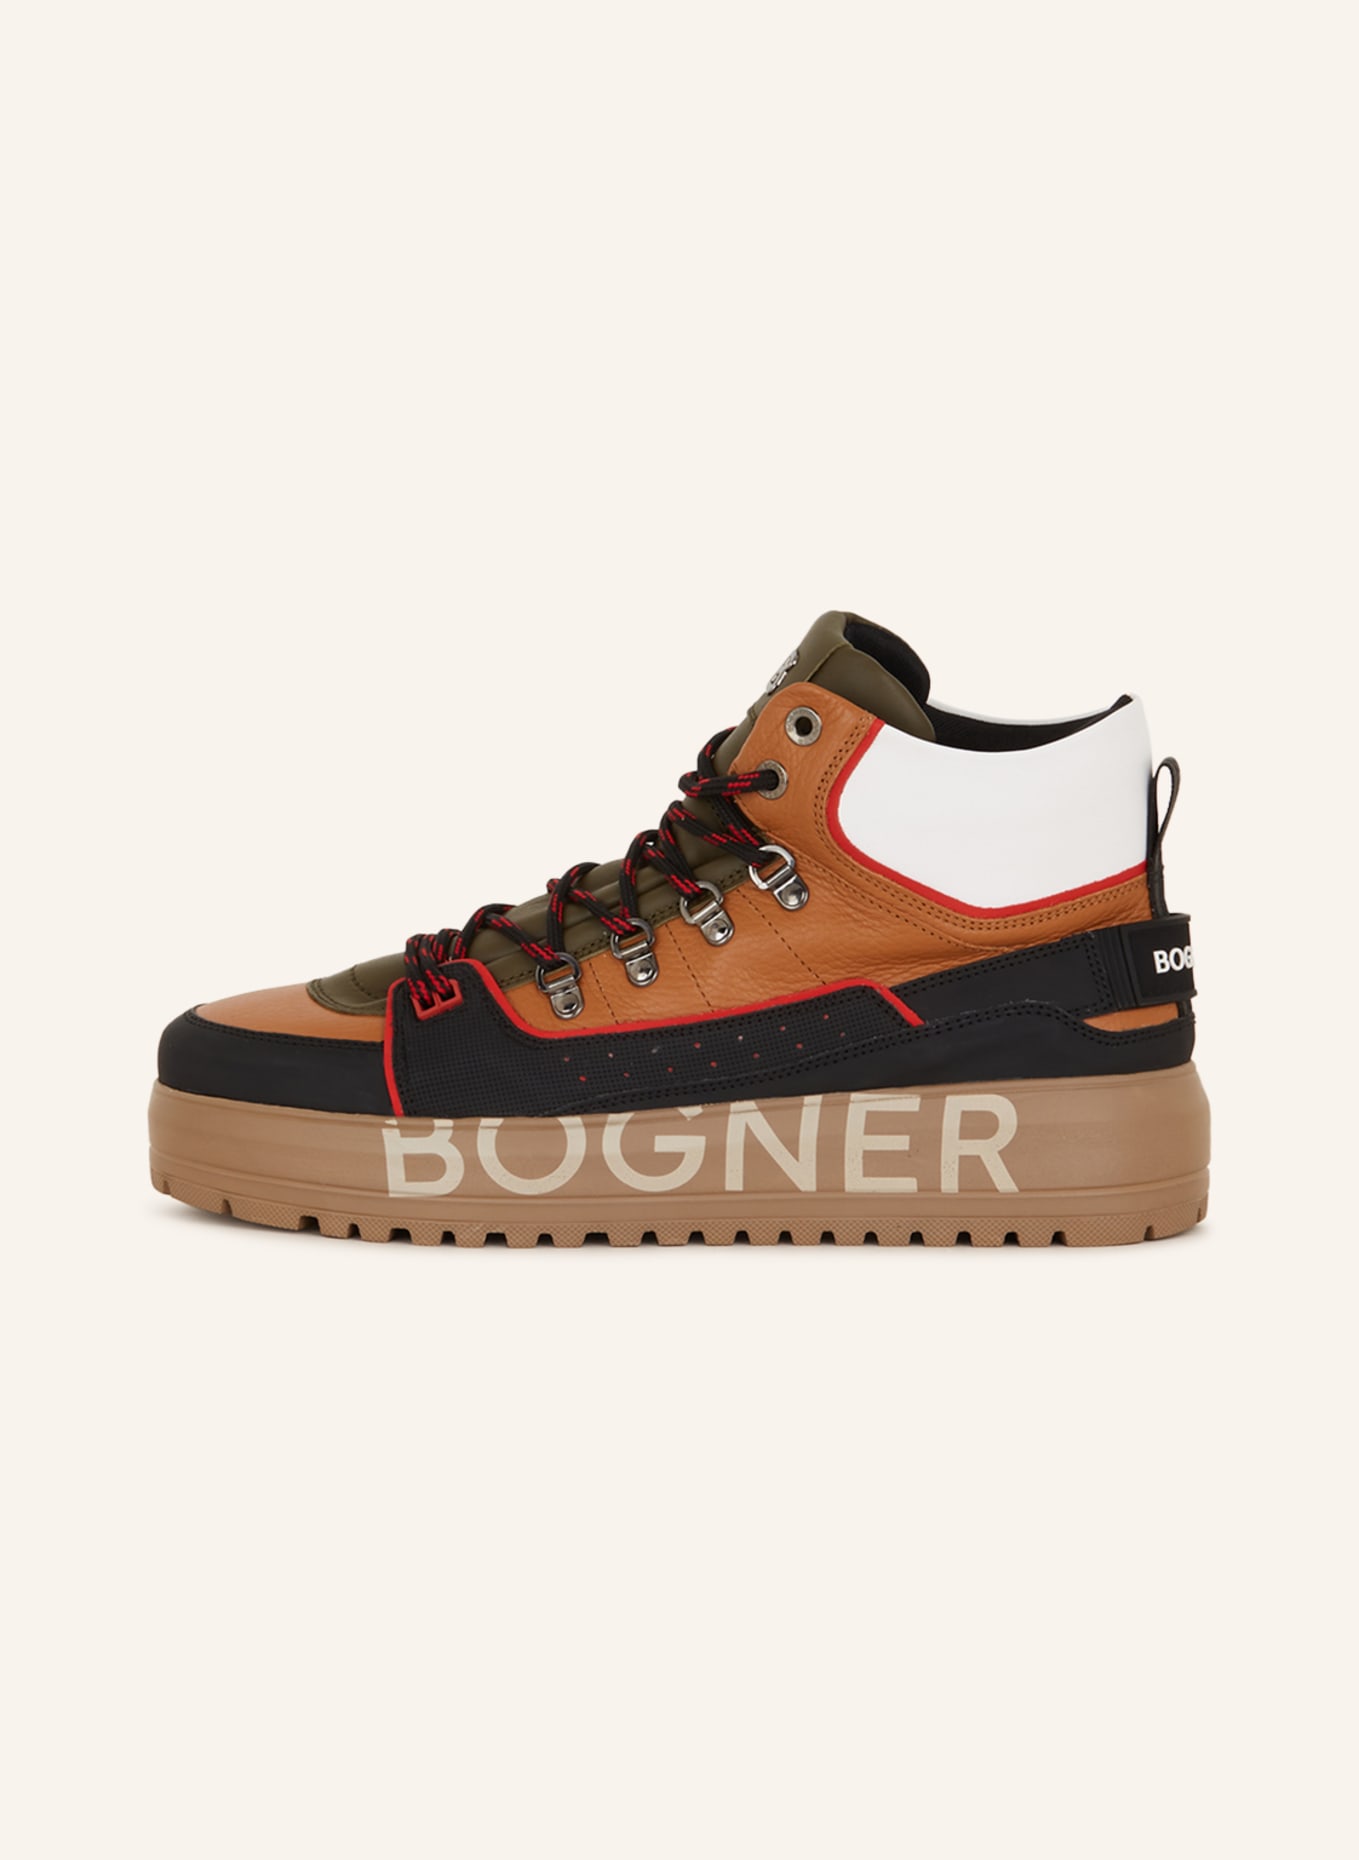 BOGNER Hightop-Sneaker ANTWERP M 7, Farbe: BRAUN/ SCHWARZ/ WEISS (Bild 4)